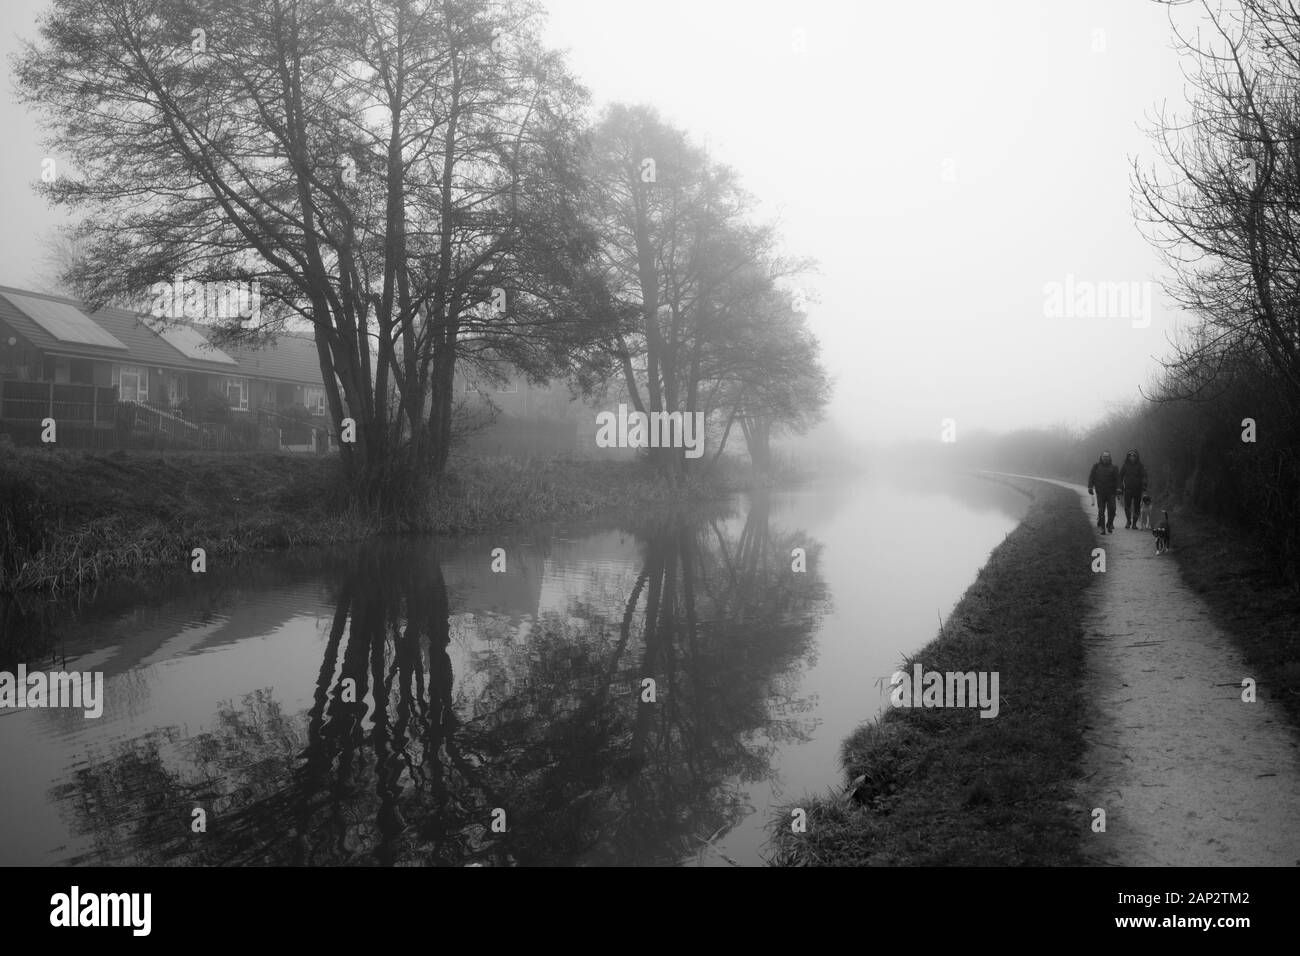 Am frühen nebligen Morgen am Trent and Mersey Kanal (Staffordshire, Großbritannien). Reflexion der grünen Bäume im Wasser. Fußweg, der in die Ewigkeit geht Stockfoto